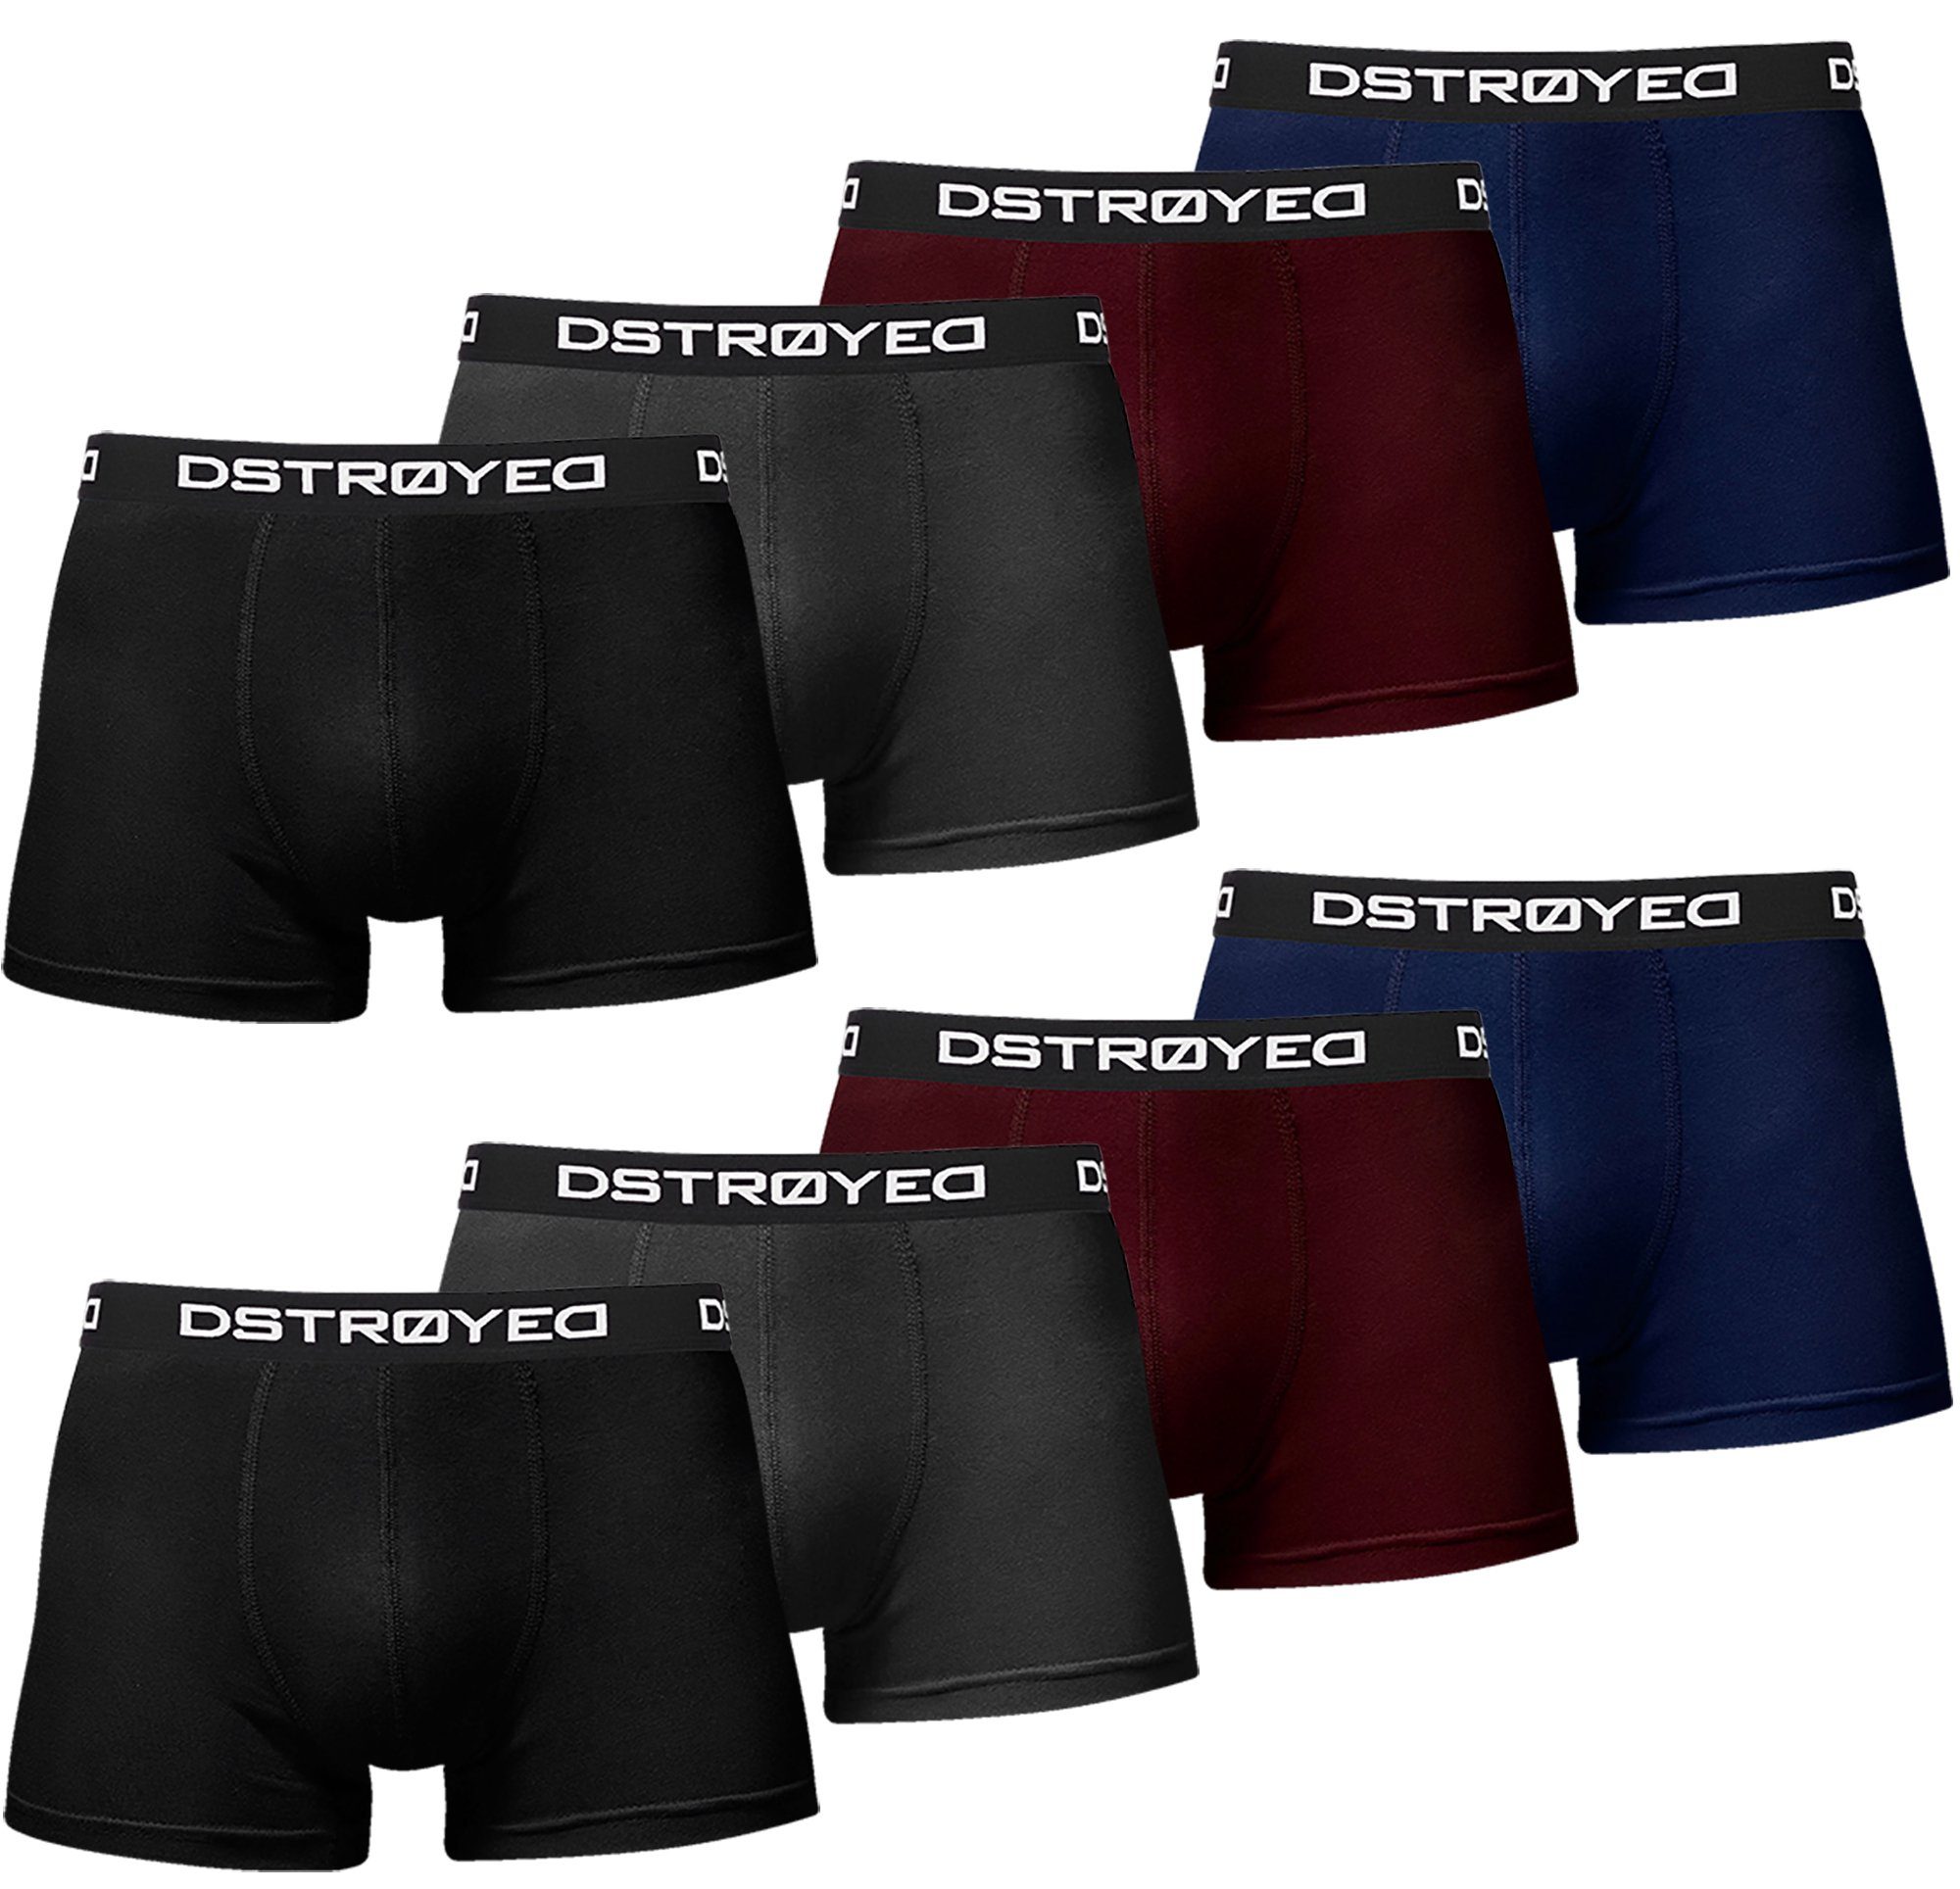 DSTROYED Boxershorts Herren Männer Unterhosen Baumwolle Premium Qualität perfekte Passform (Vorteilspack, 8er, 8er Pack) 316b-mehrfarbig